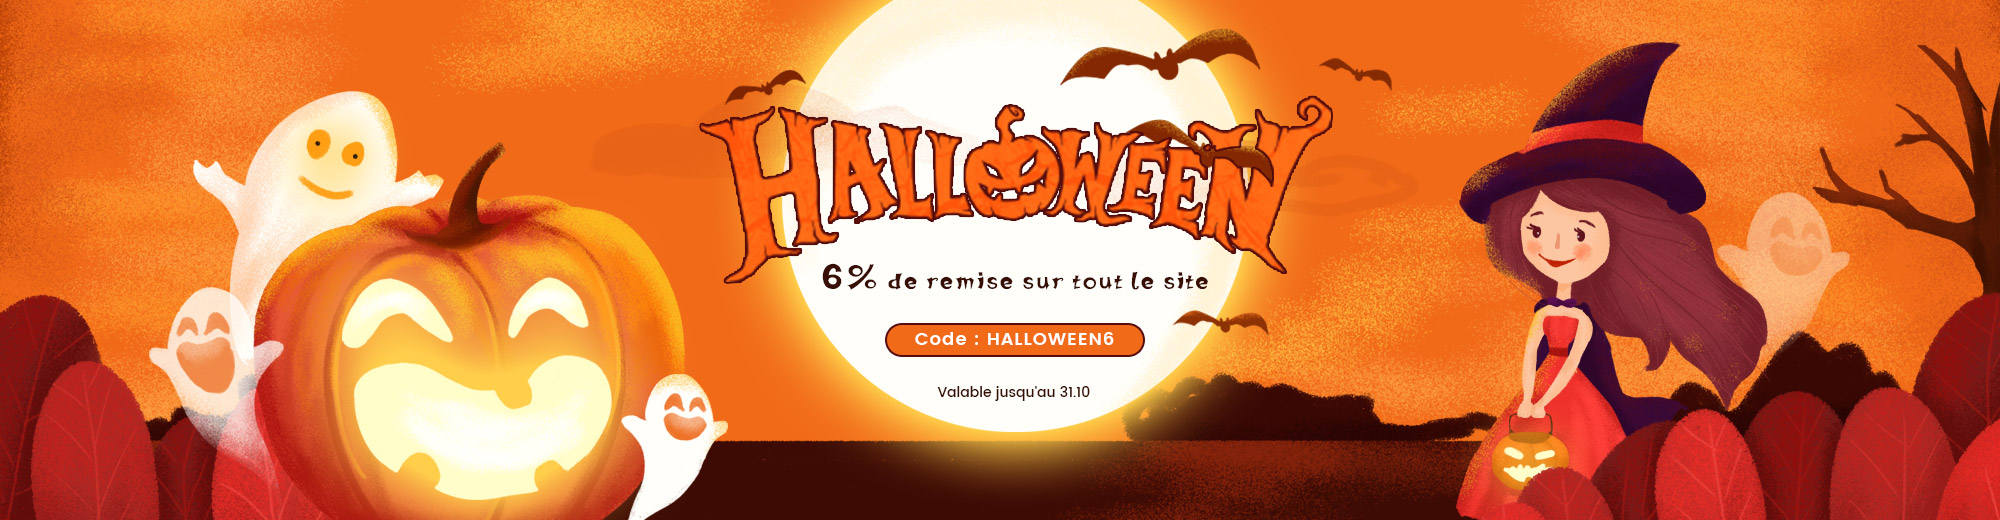 Ne manquez pas la remise supplémentaire de 6%. Découvrez notre offre pour Halloween et profitez d'une livraison gratuite sur tout le site costway.fr!